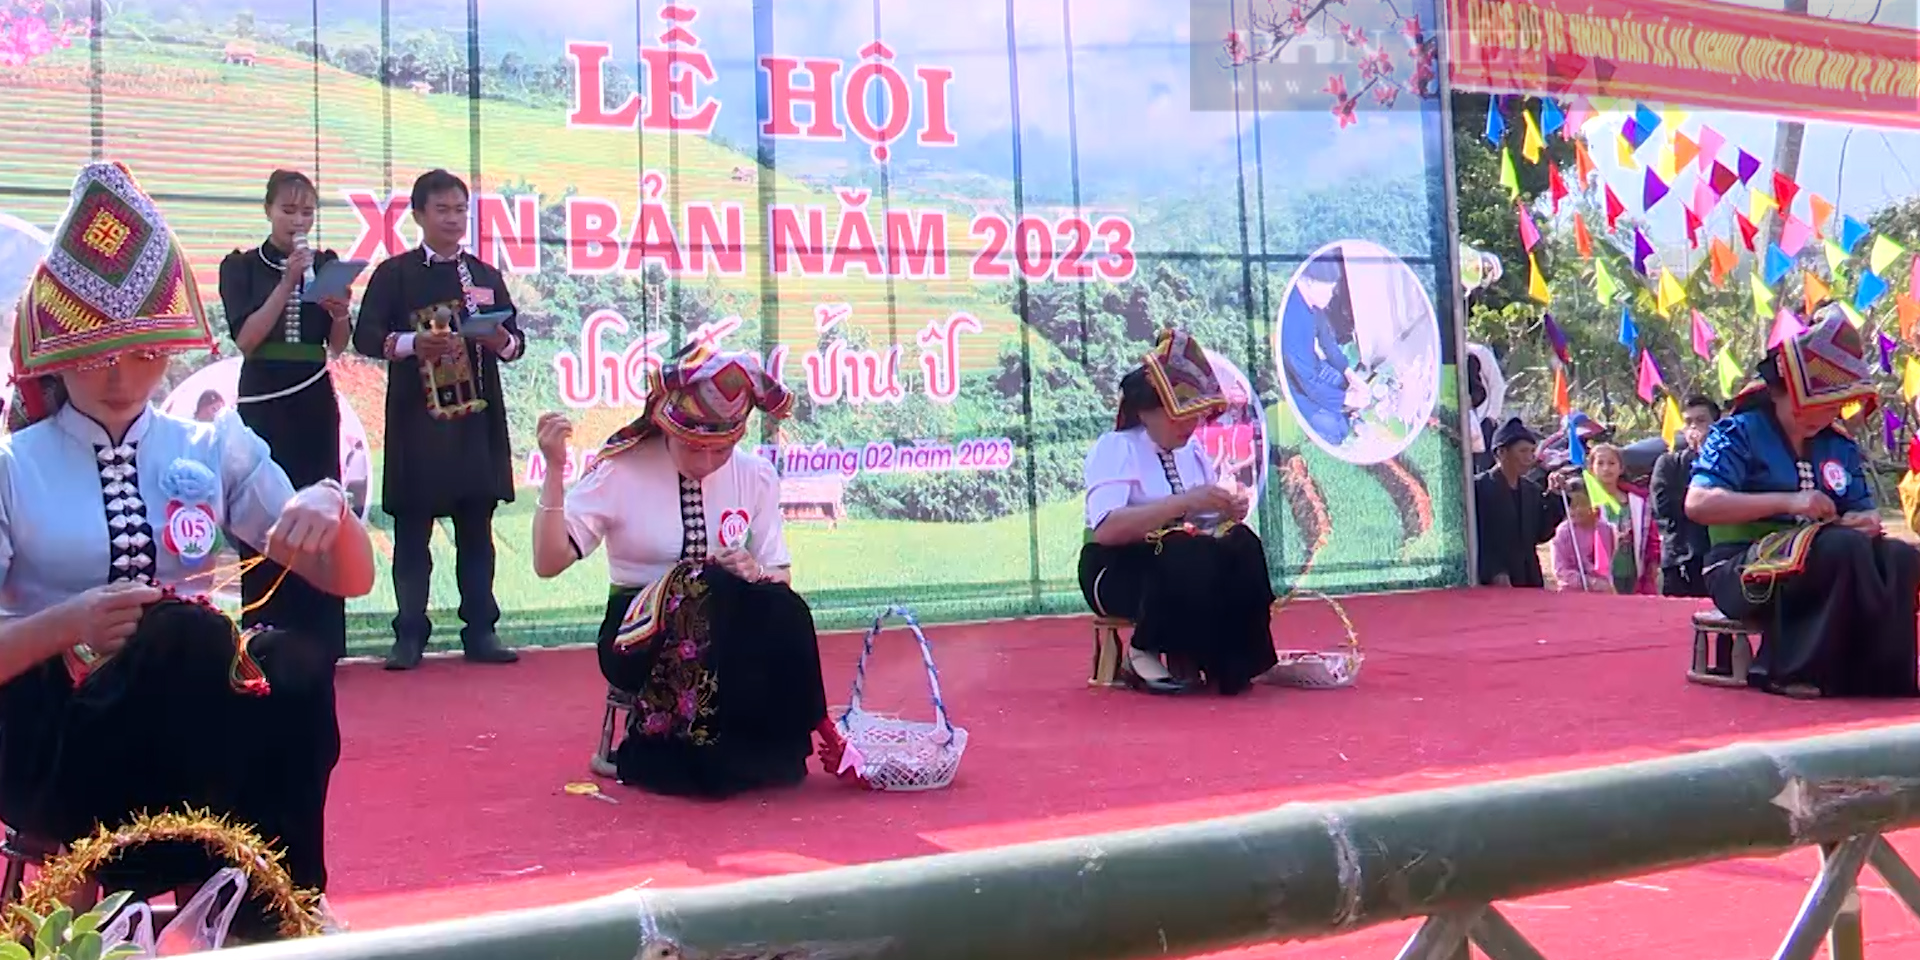 Lễ hội Xên bản, ngày hội mang bản sắc văn hóa truyền thống của dân tộc Thái vùng cao - Ảnh 6.